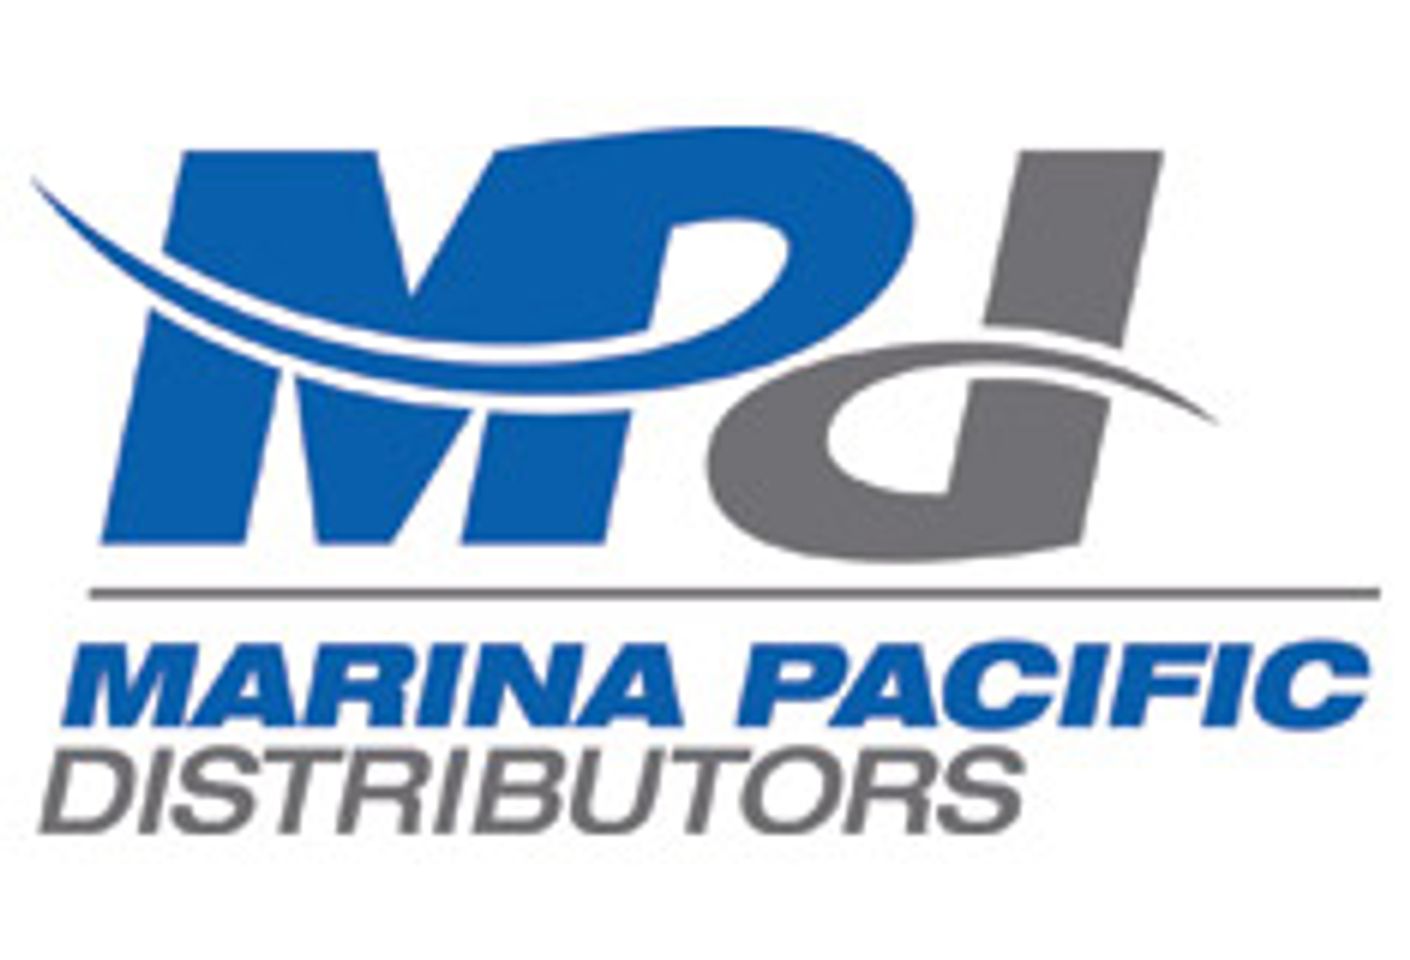 Company Profile: Marina Pacific